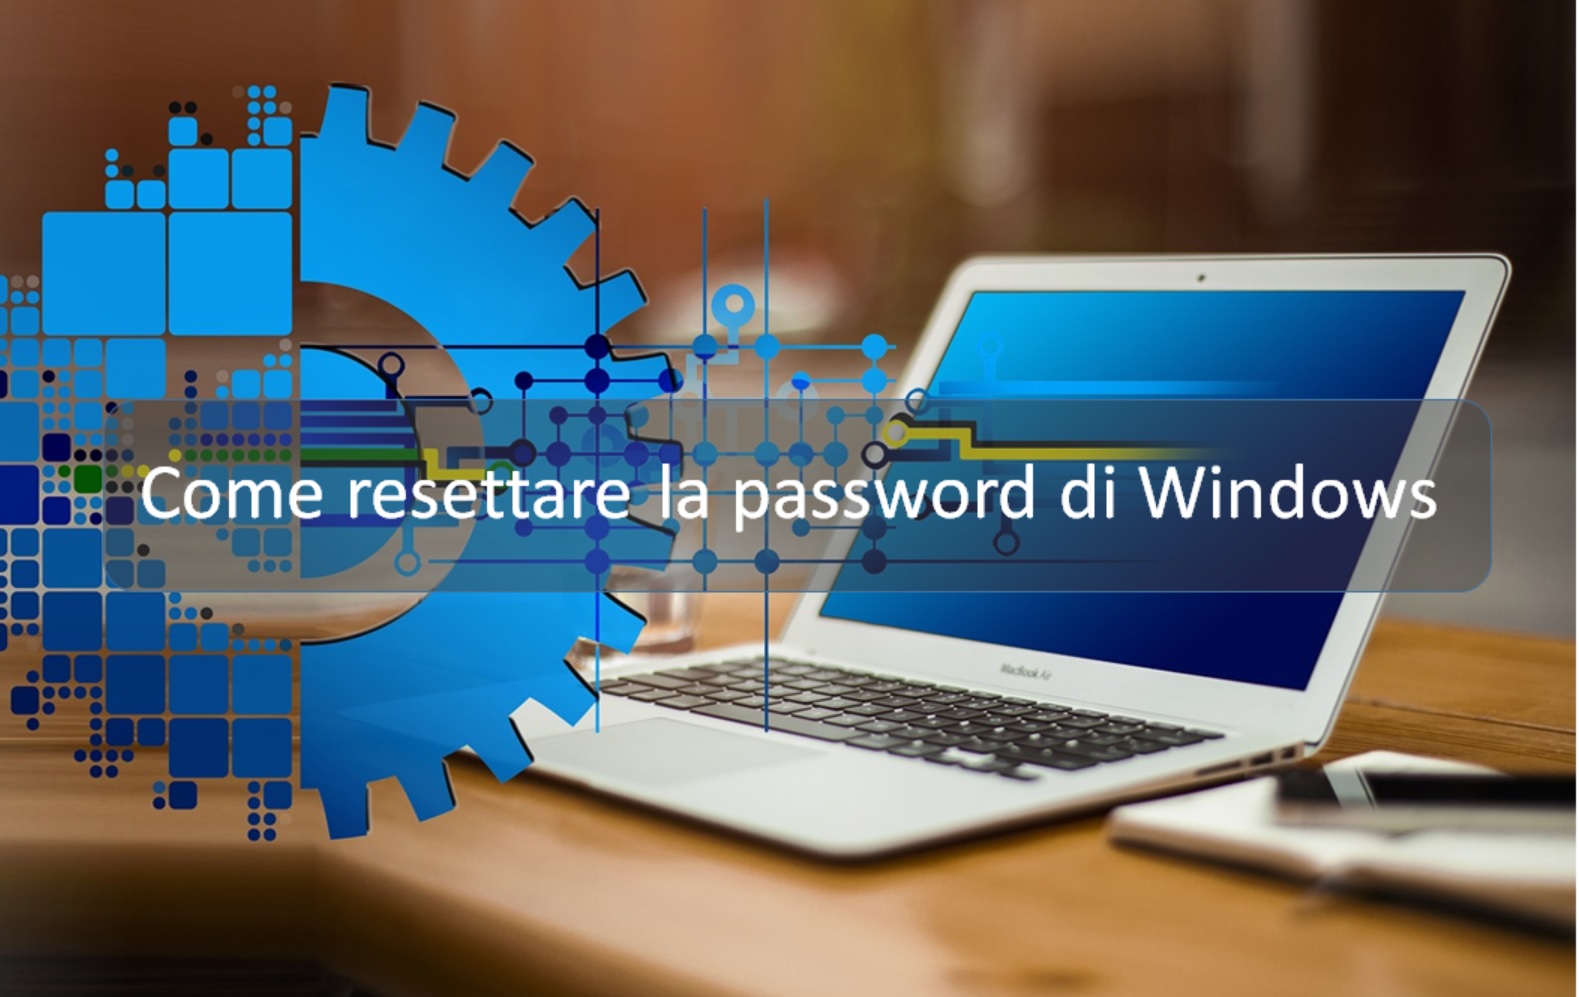 Come resettare la password di Windows